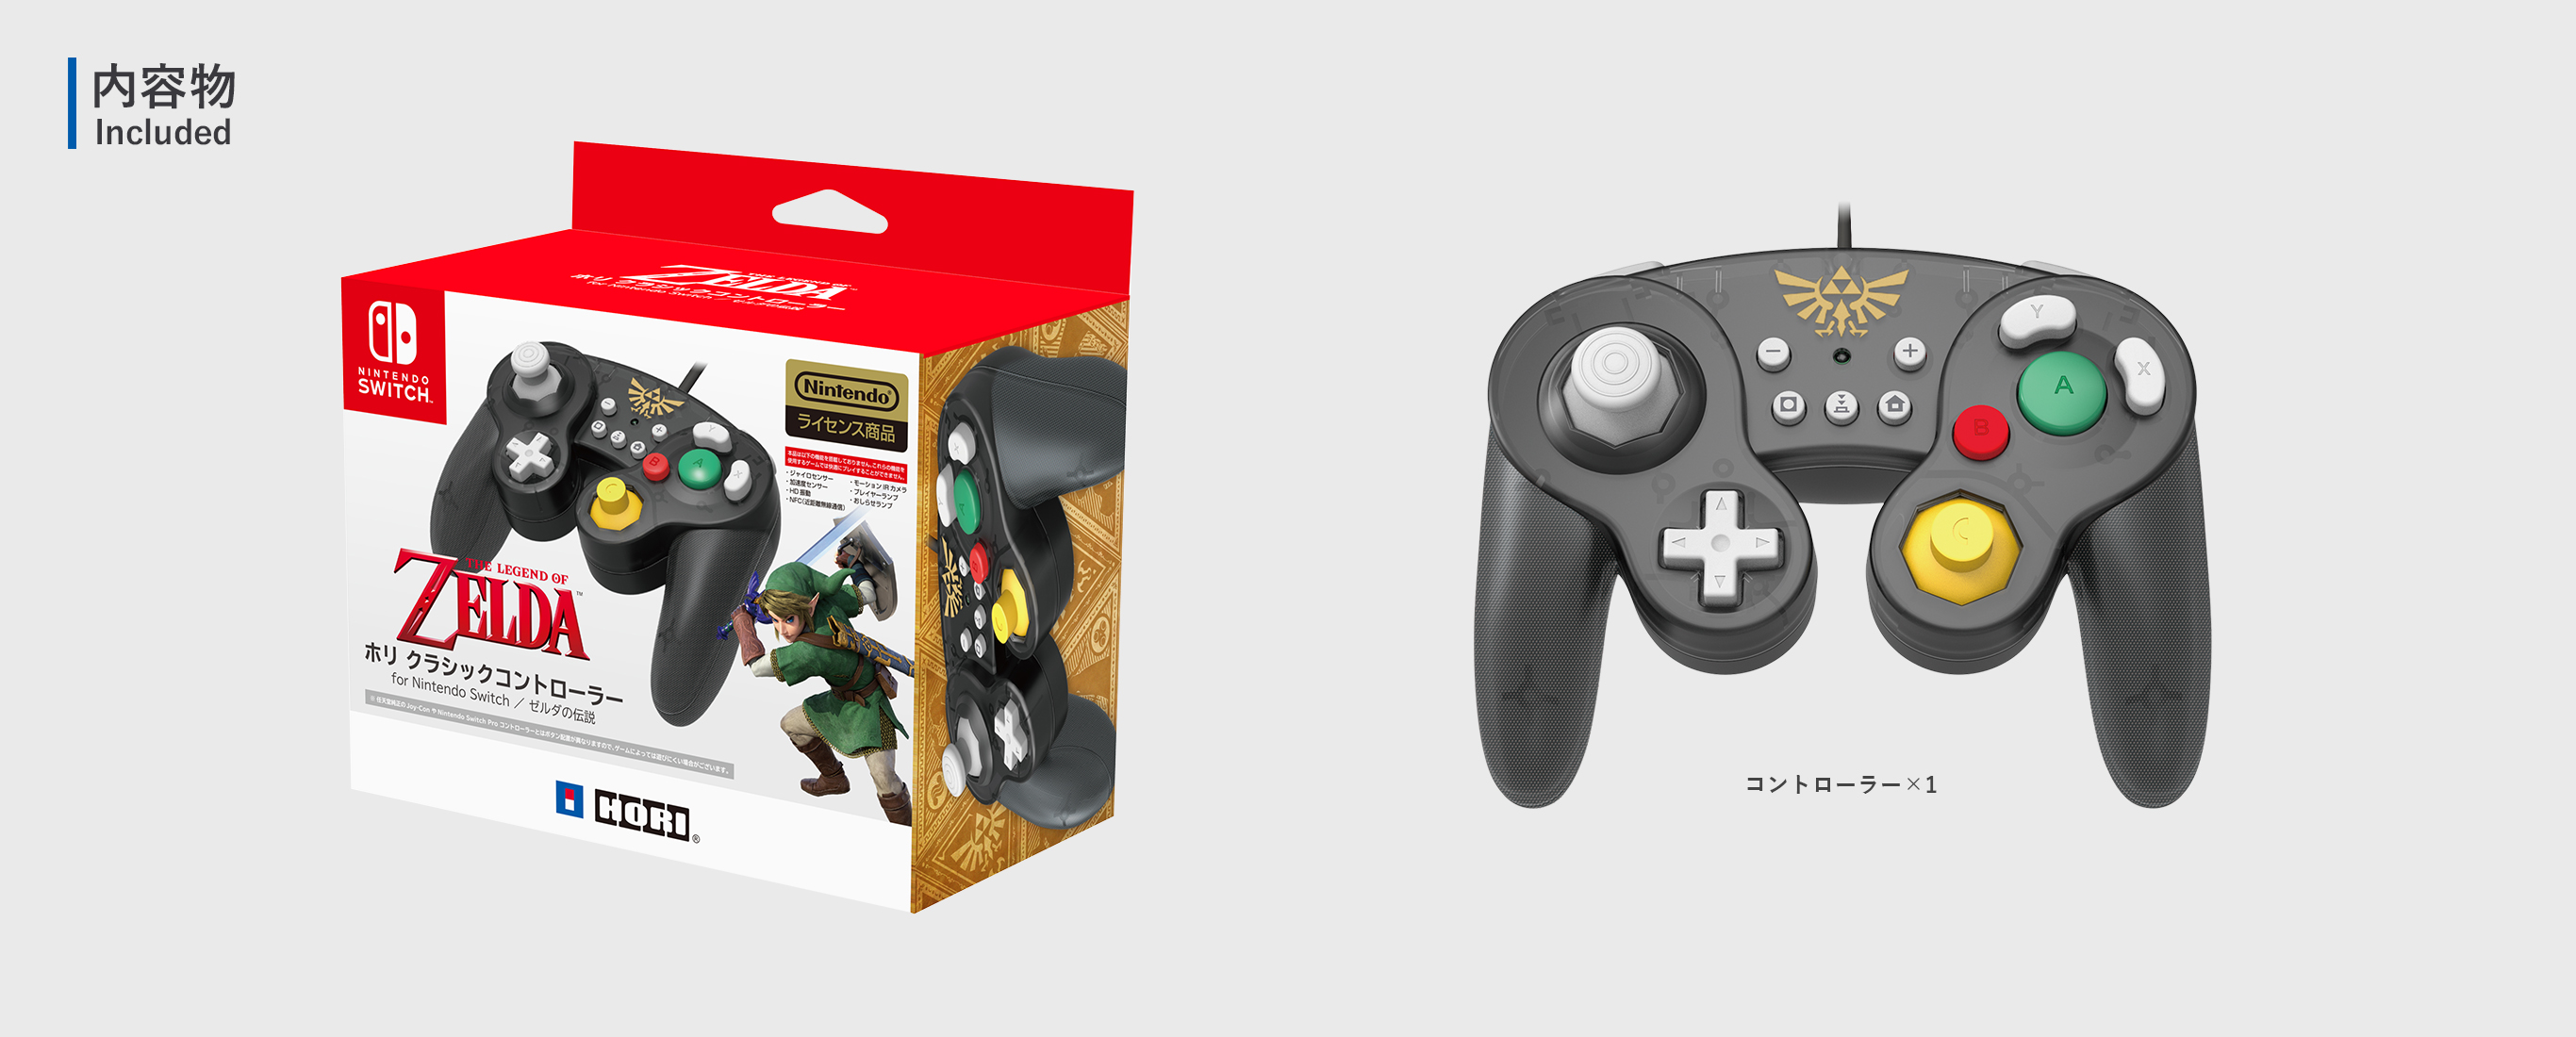 株式会社 Hori ホリ クラシックコントローラー For Nintendo Switch ゼルダの伝説